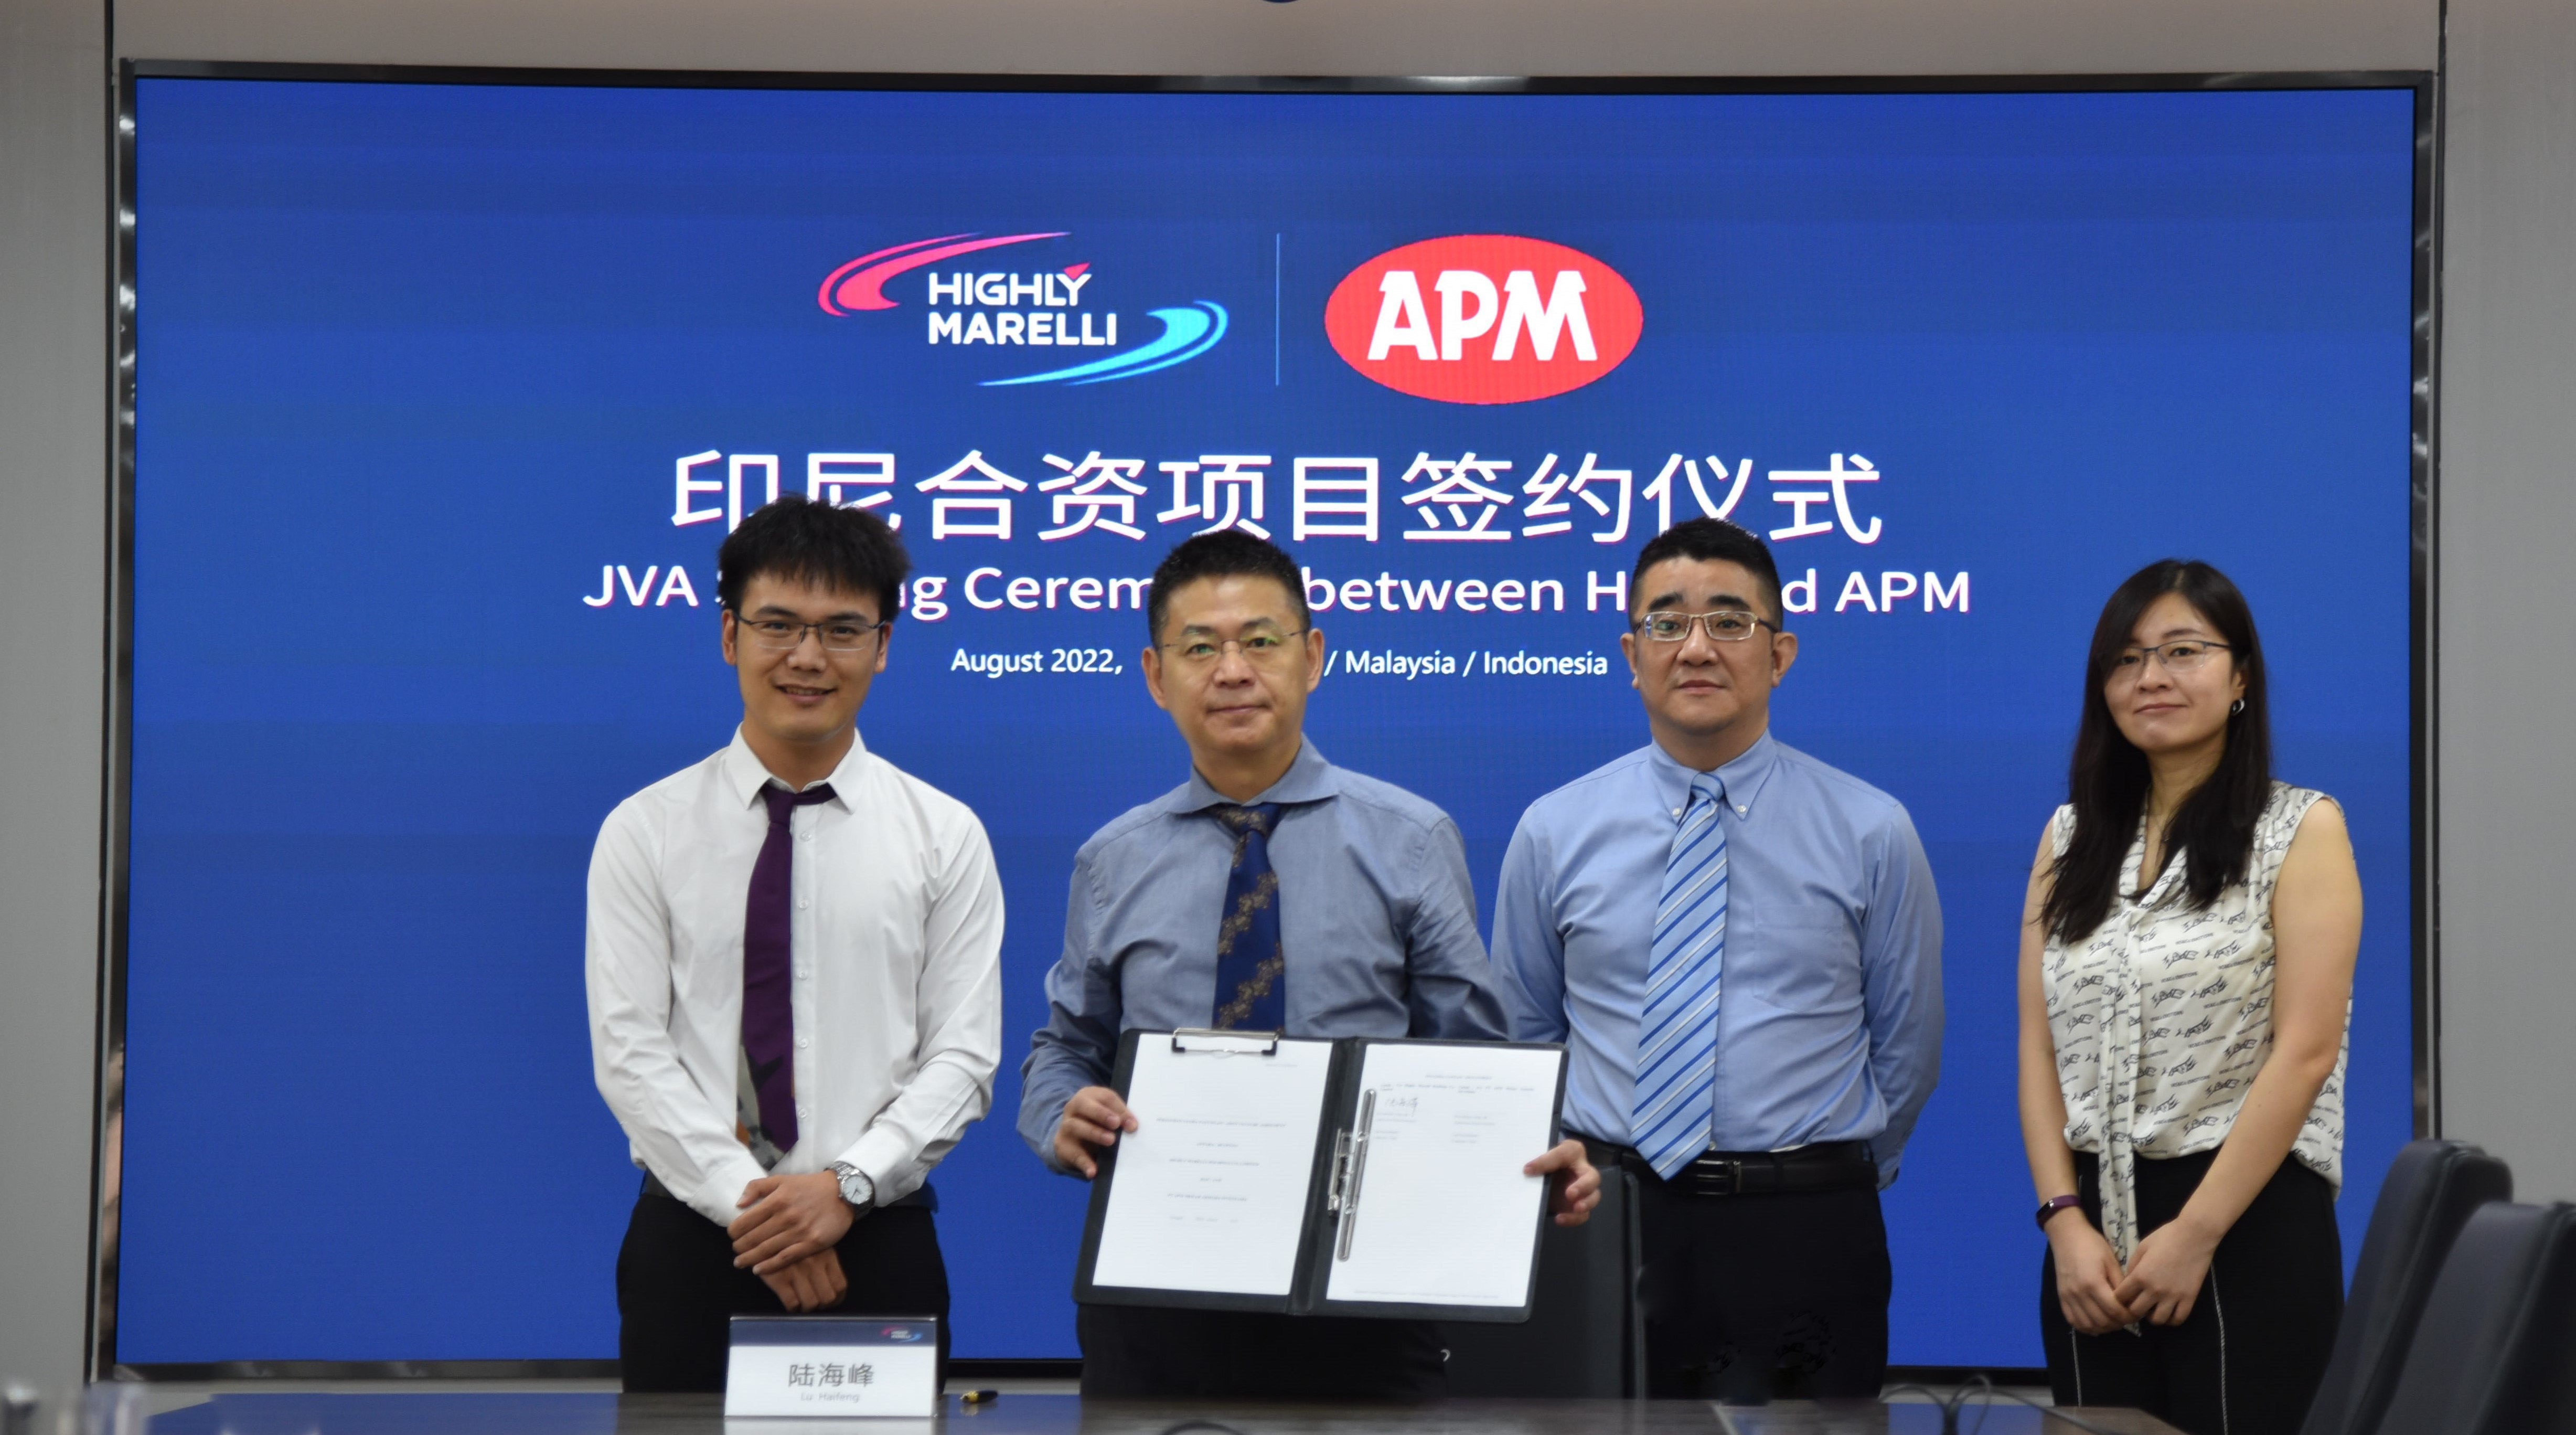 ハイリマレリとAPM、インドネシアでの合弁会社設立に関する契約書に調印